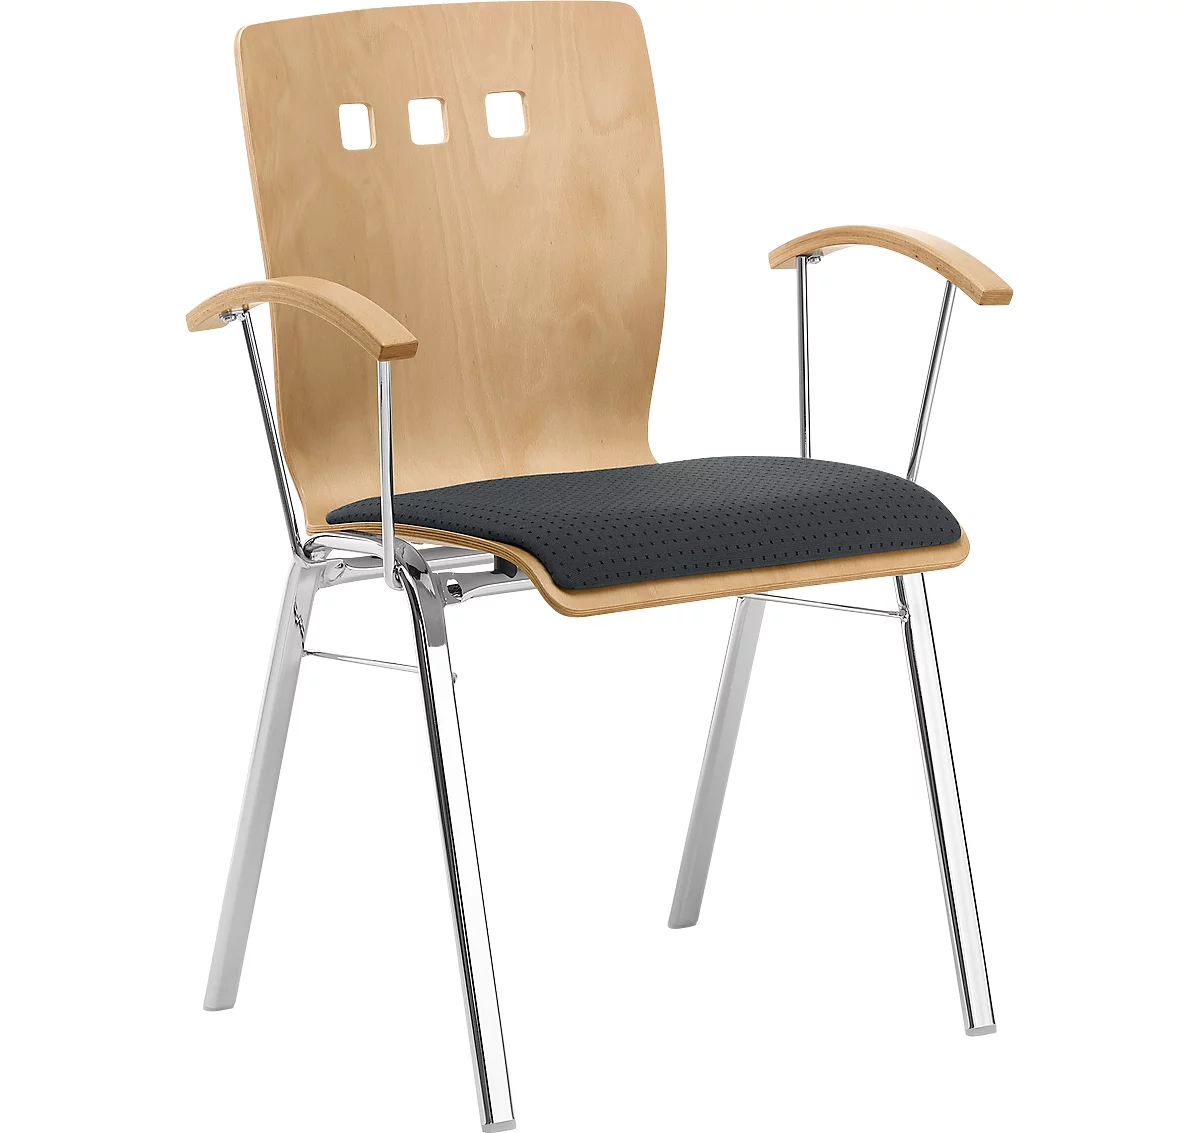 Silla apilable 7450, asiento moldeado, apoyo lumbar, perforaciones de diseño, con reposabrazos, tapizado Point/Trevira CS, gris